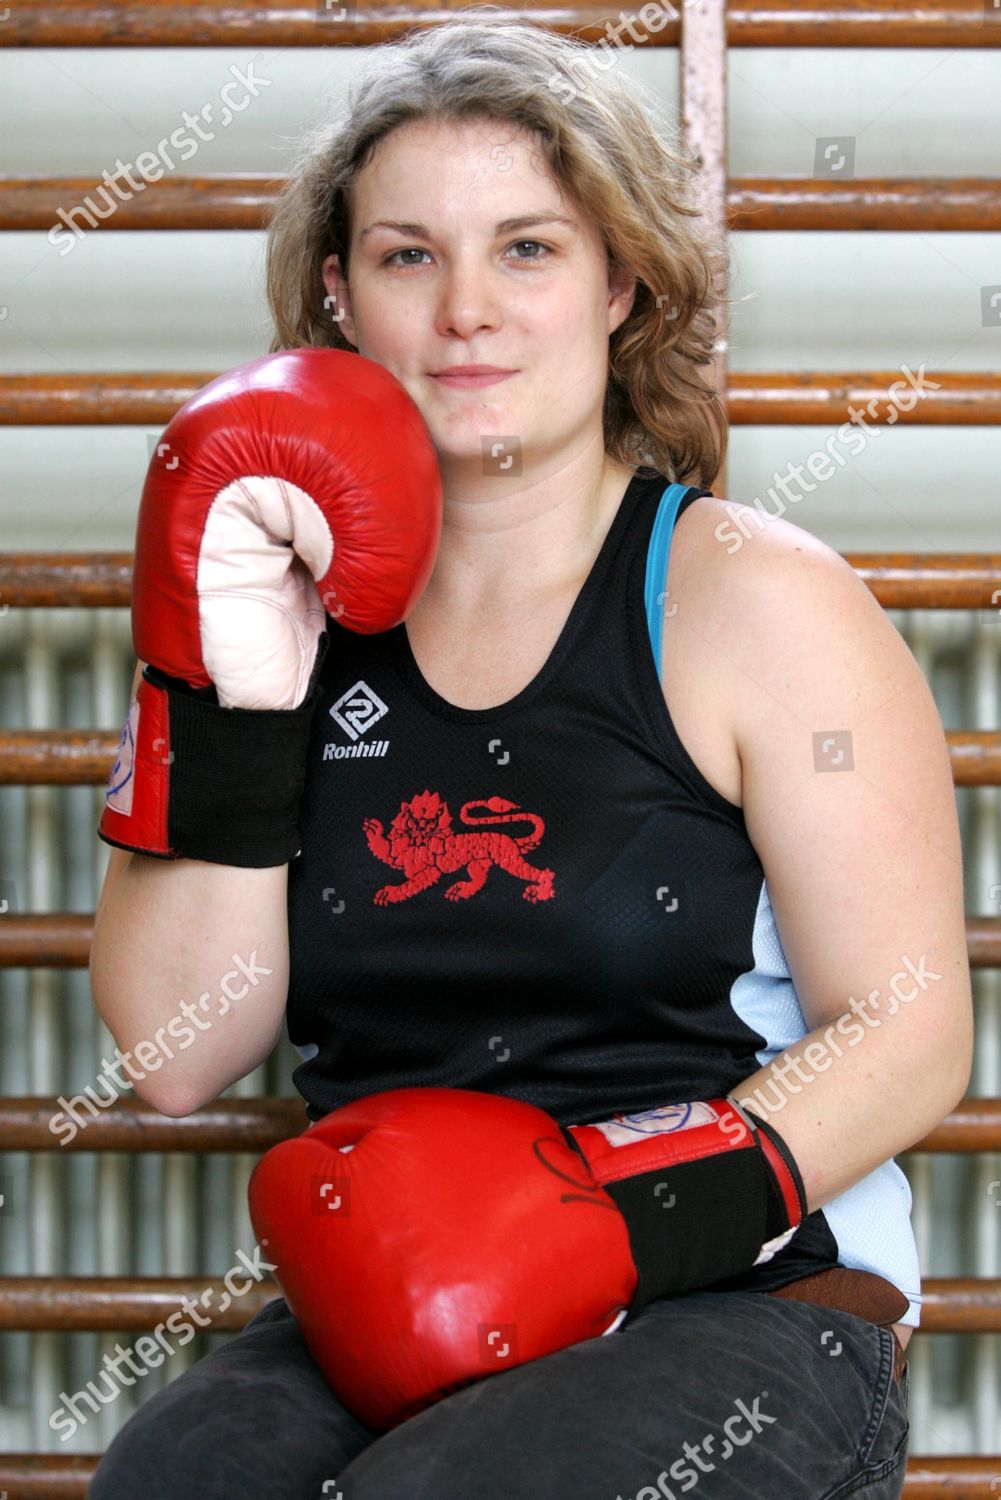 amateur boxing association for girls amateur